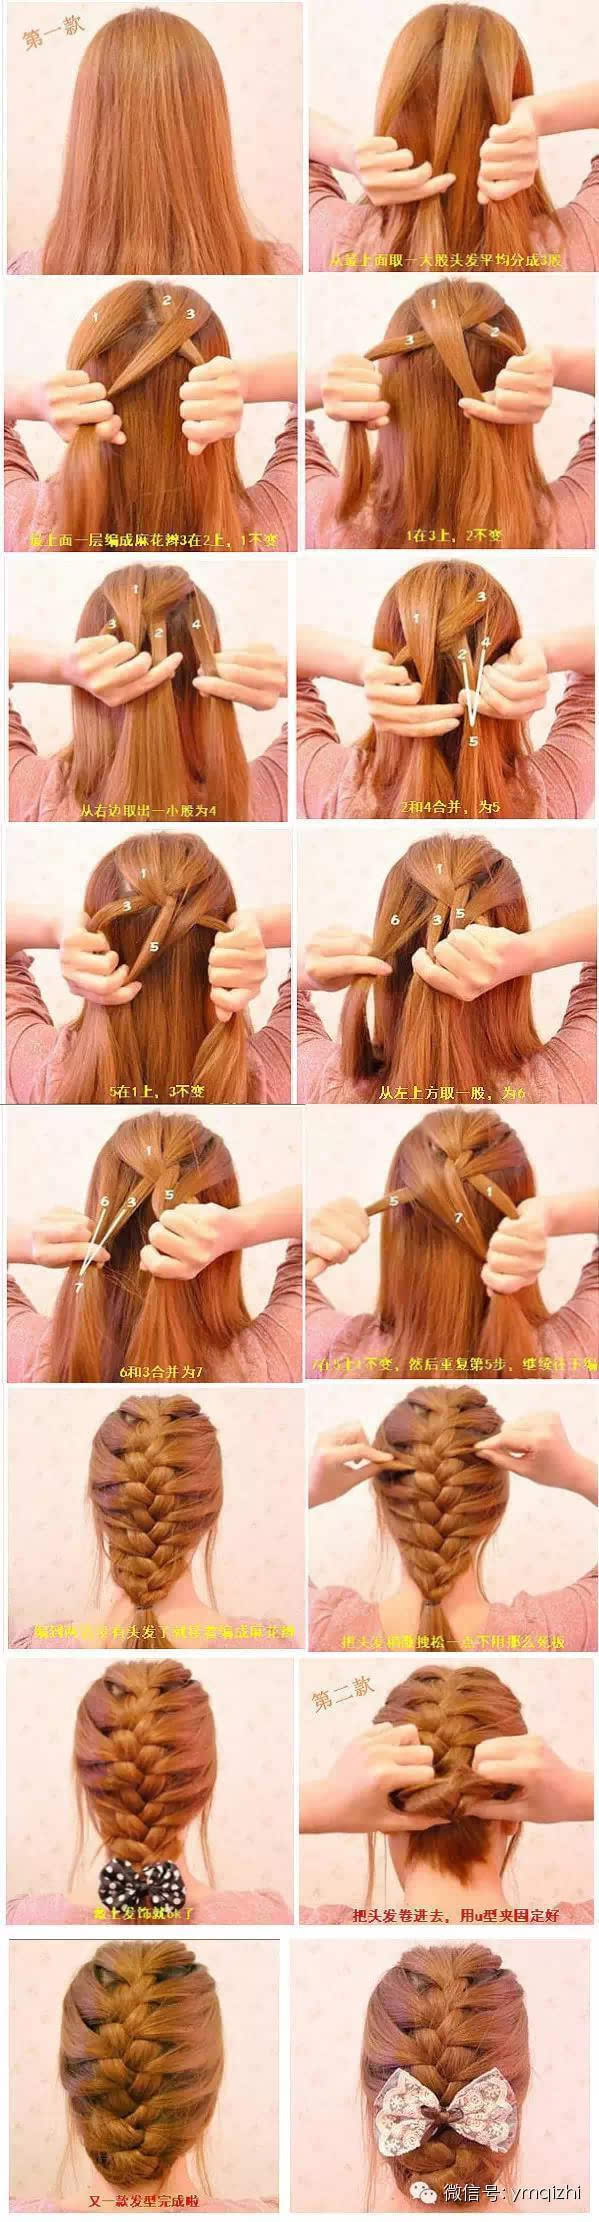 10种简单好看的扎头发方法图解,包罗韩式编发,盘发,花苞头,蜈蚣辫等